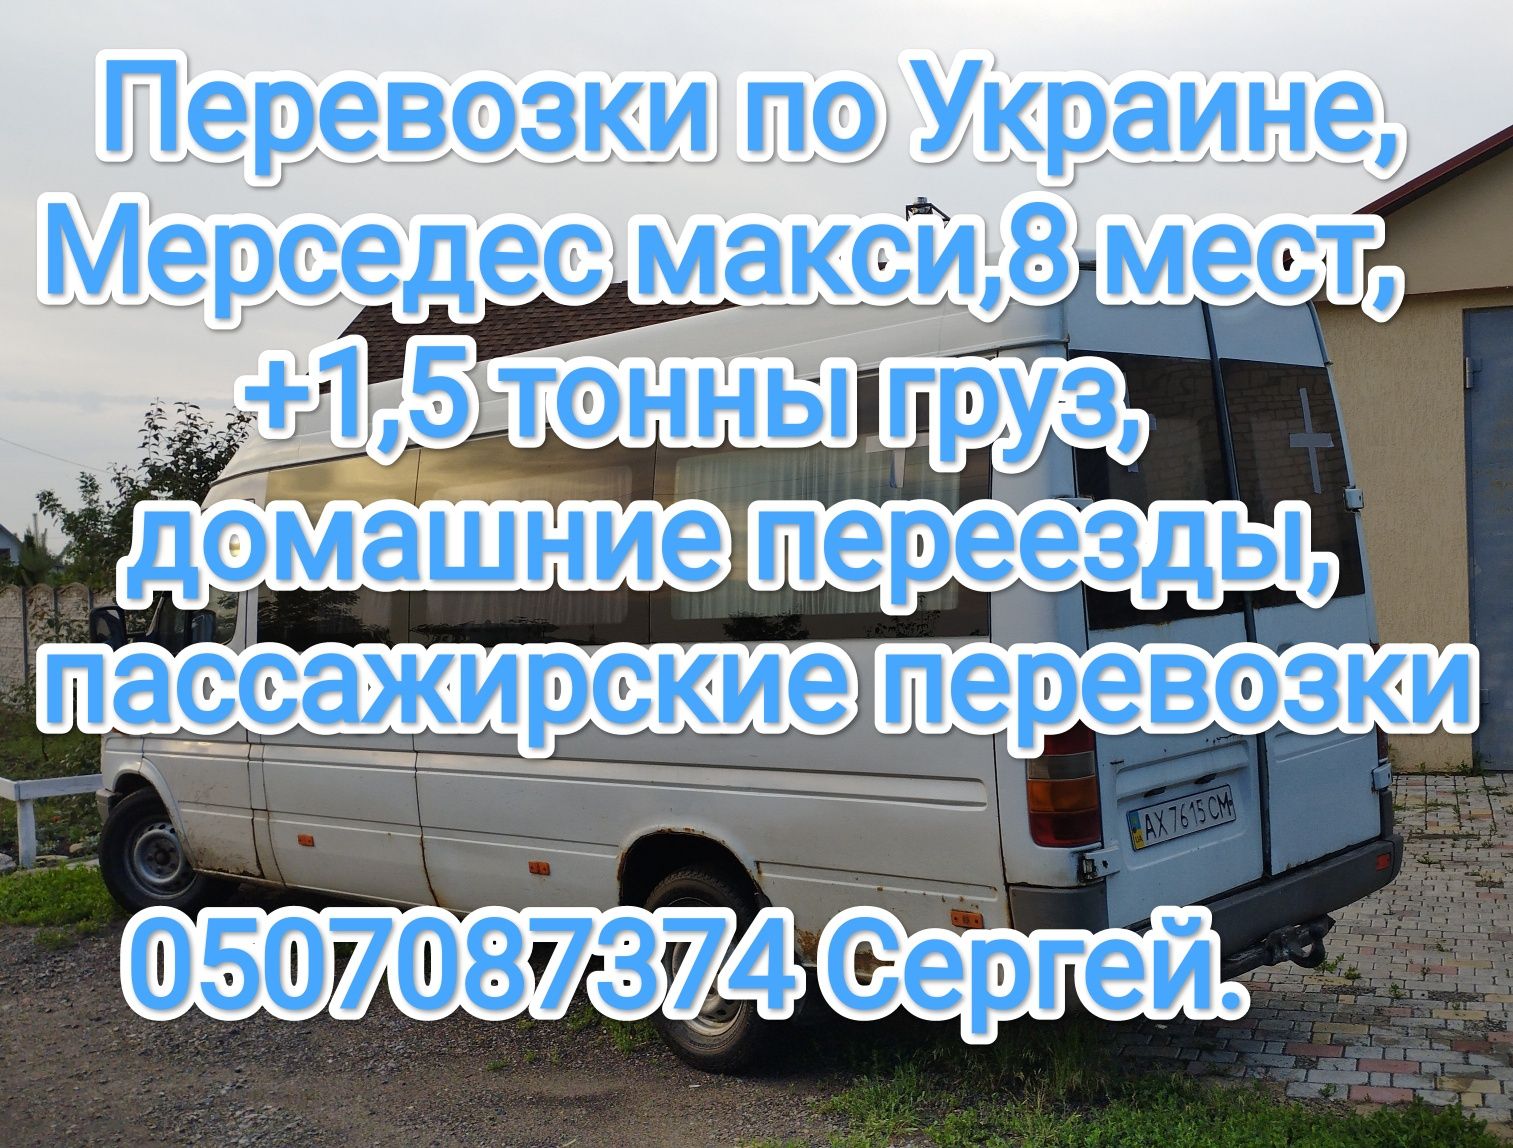 Перевозки по Украине Спринтер макси,8мест+1,5 т.Домашние переезды.